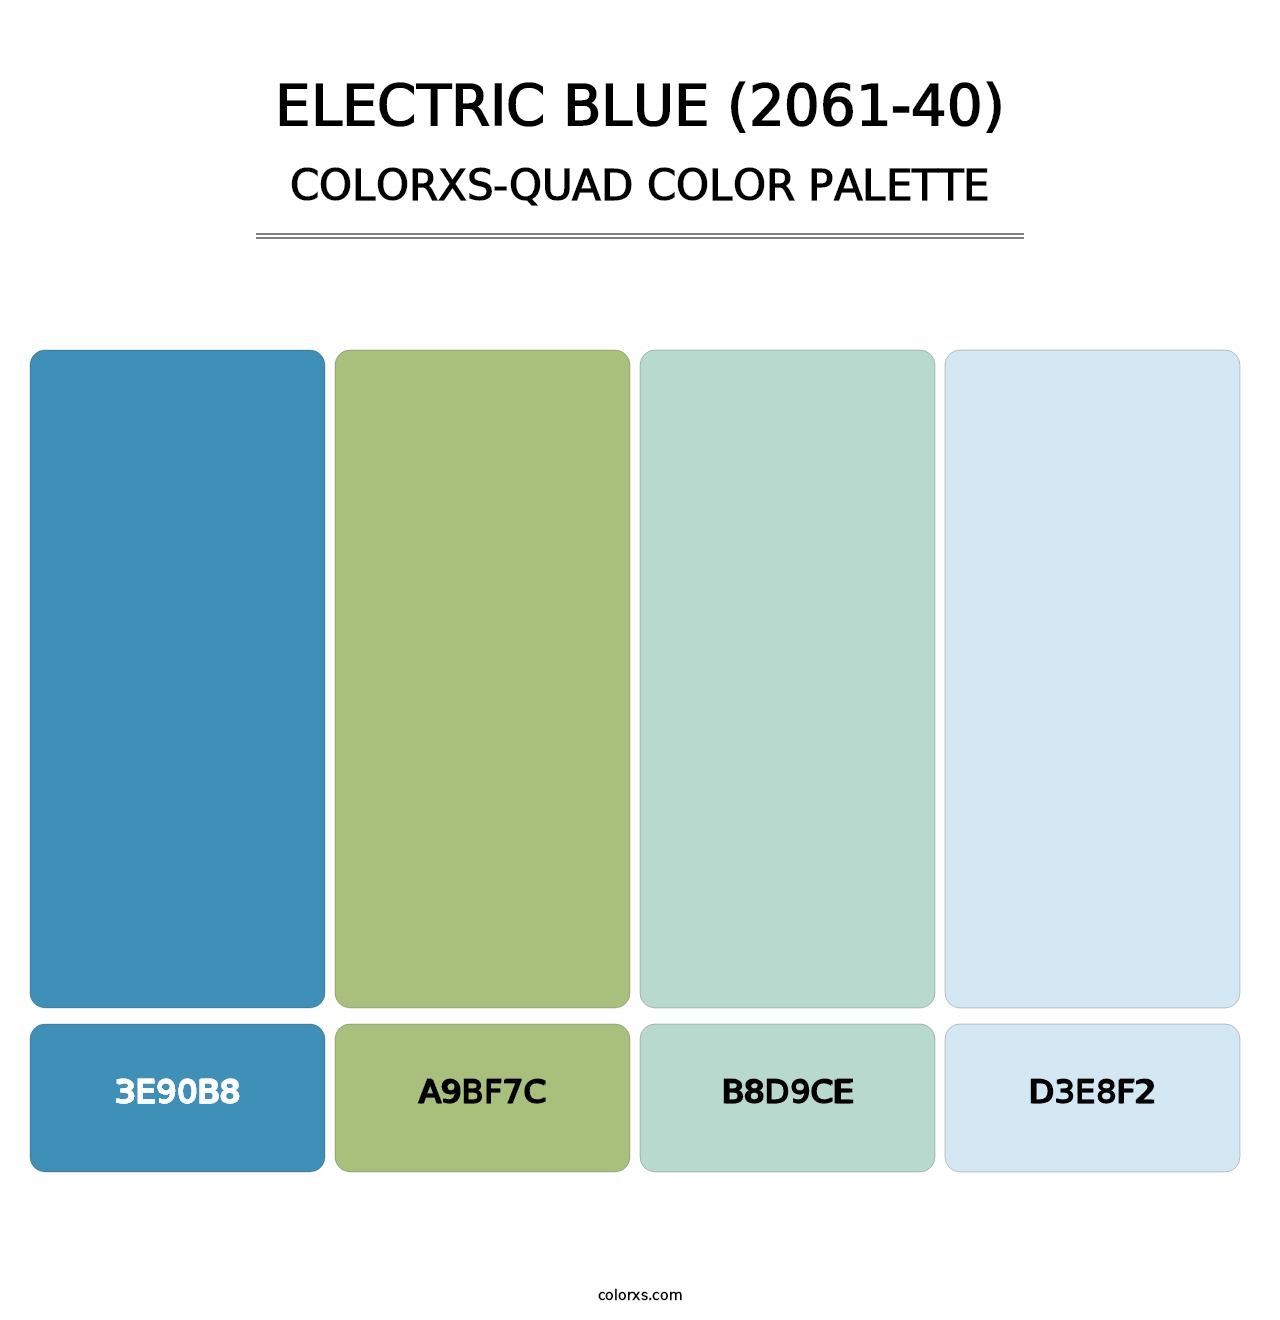 Electric Blue (2061-40) - Colorxs Quad Palette